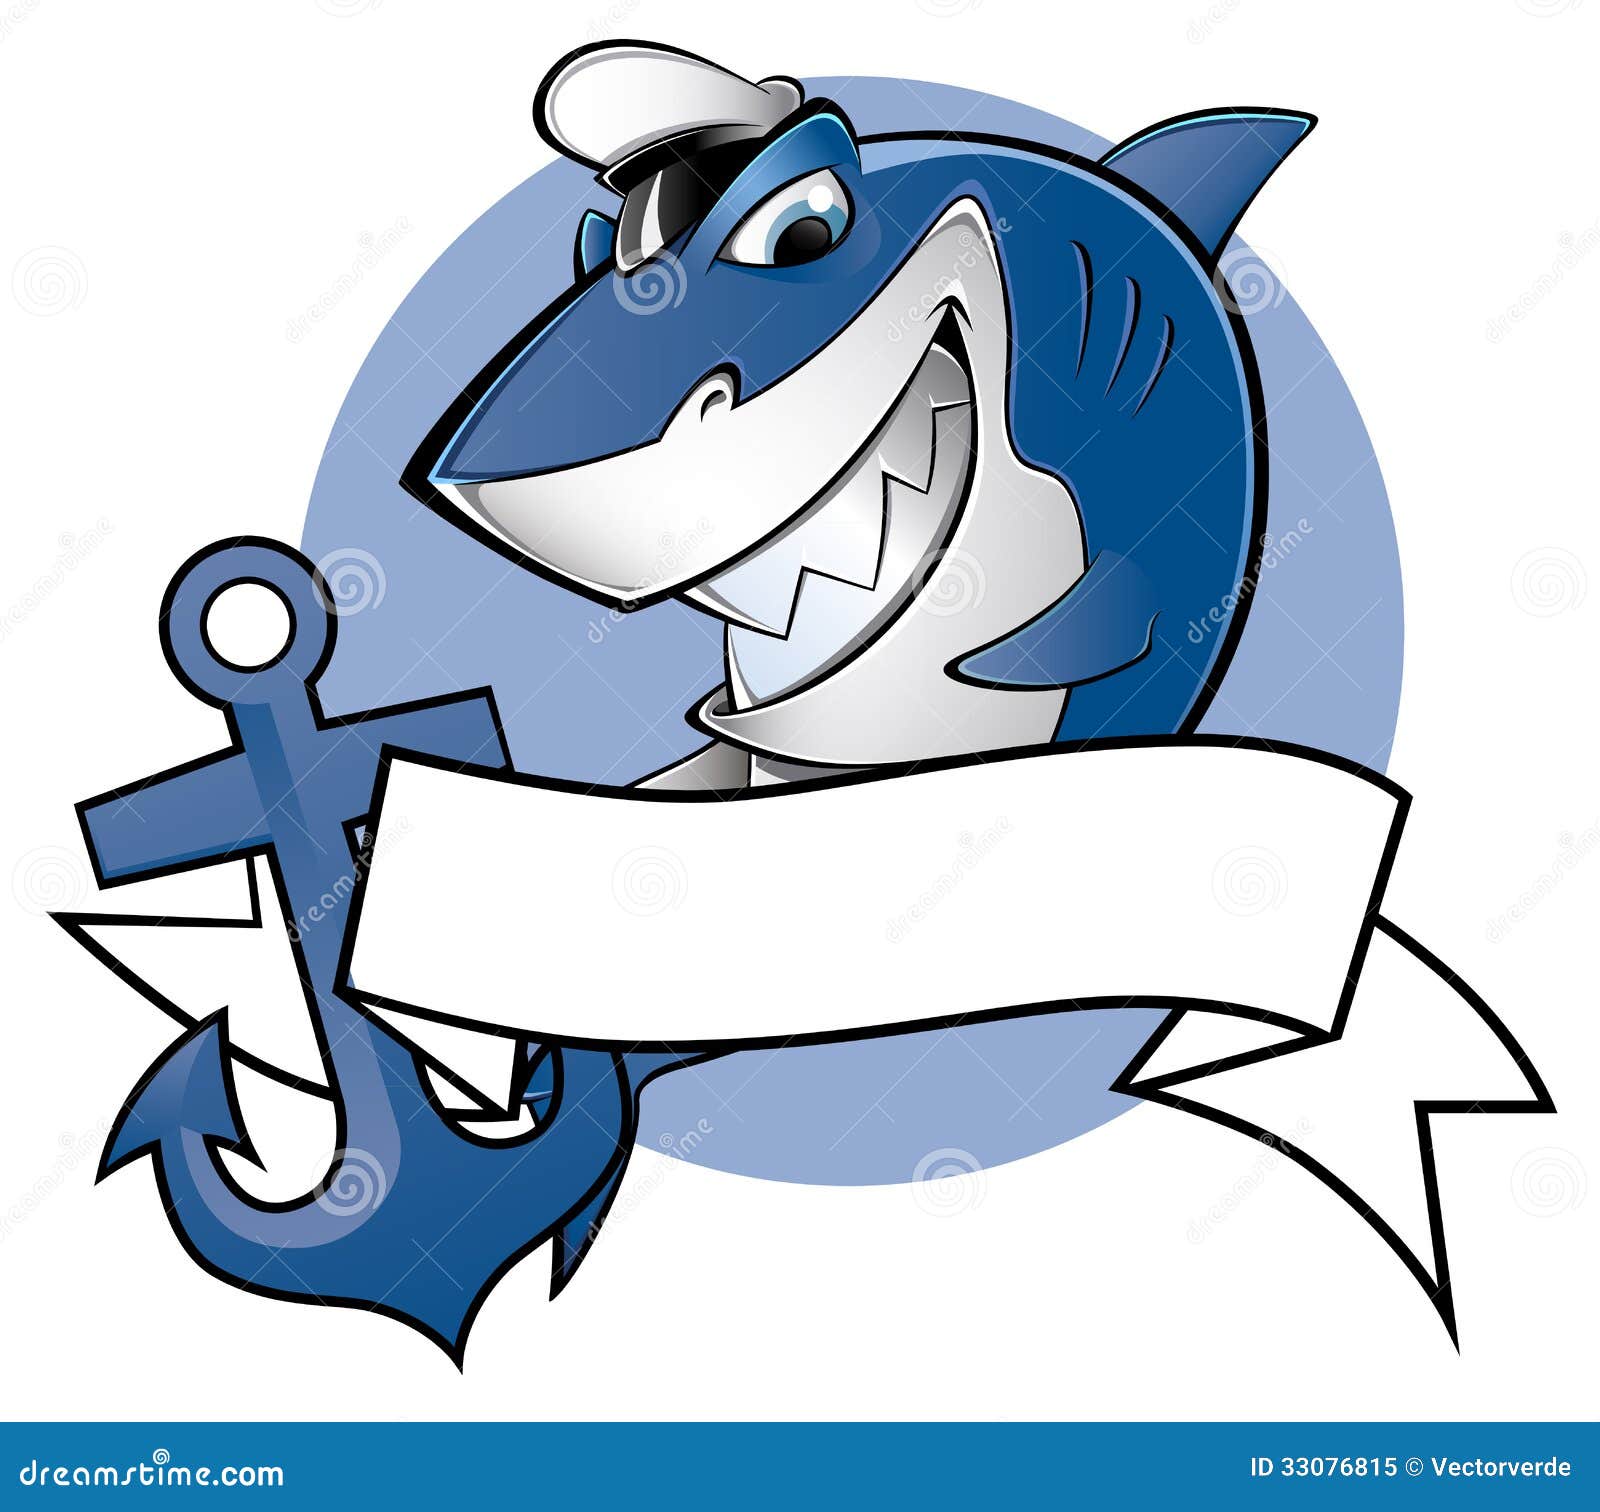 sailor shark